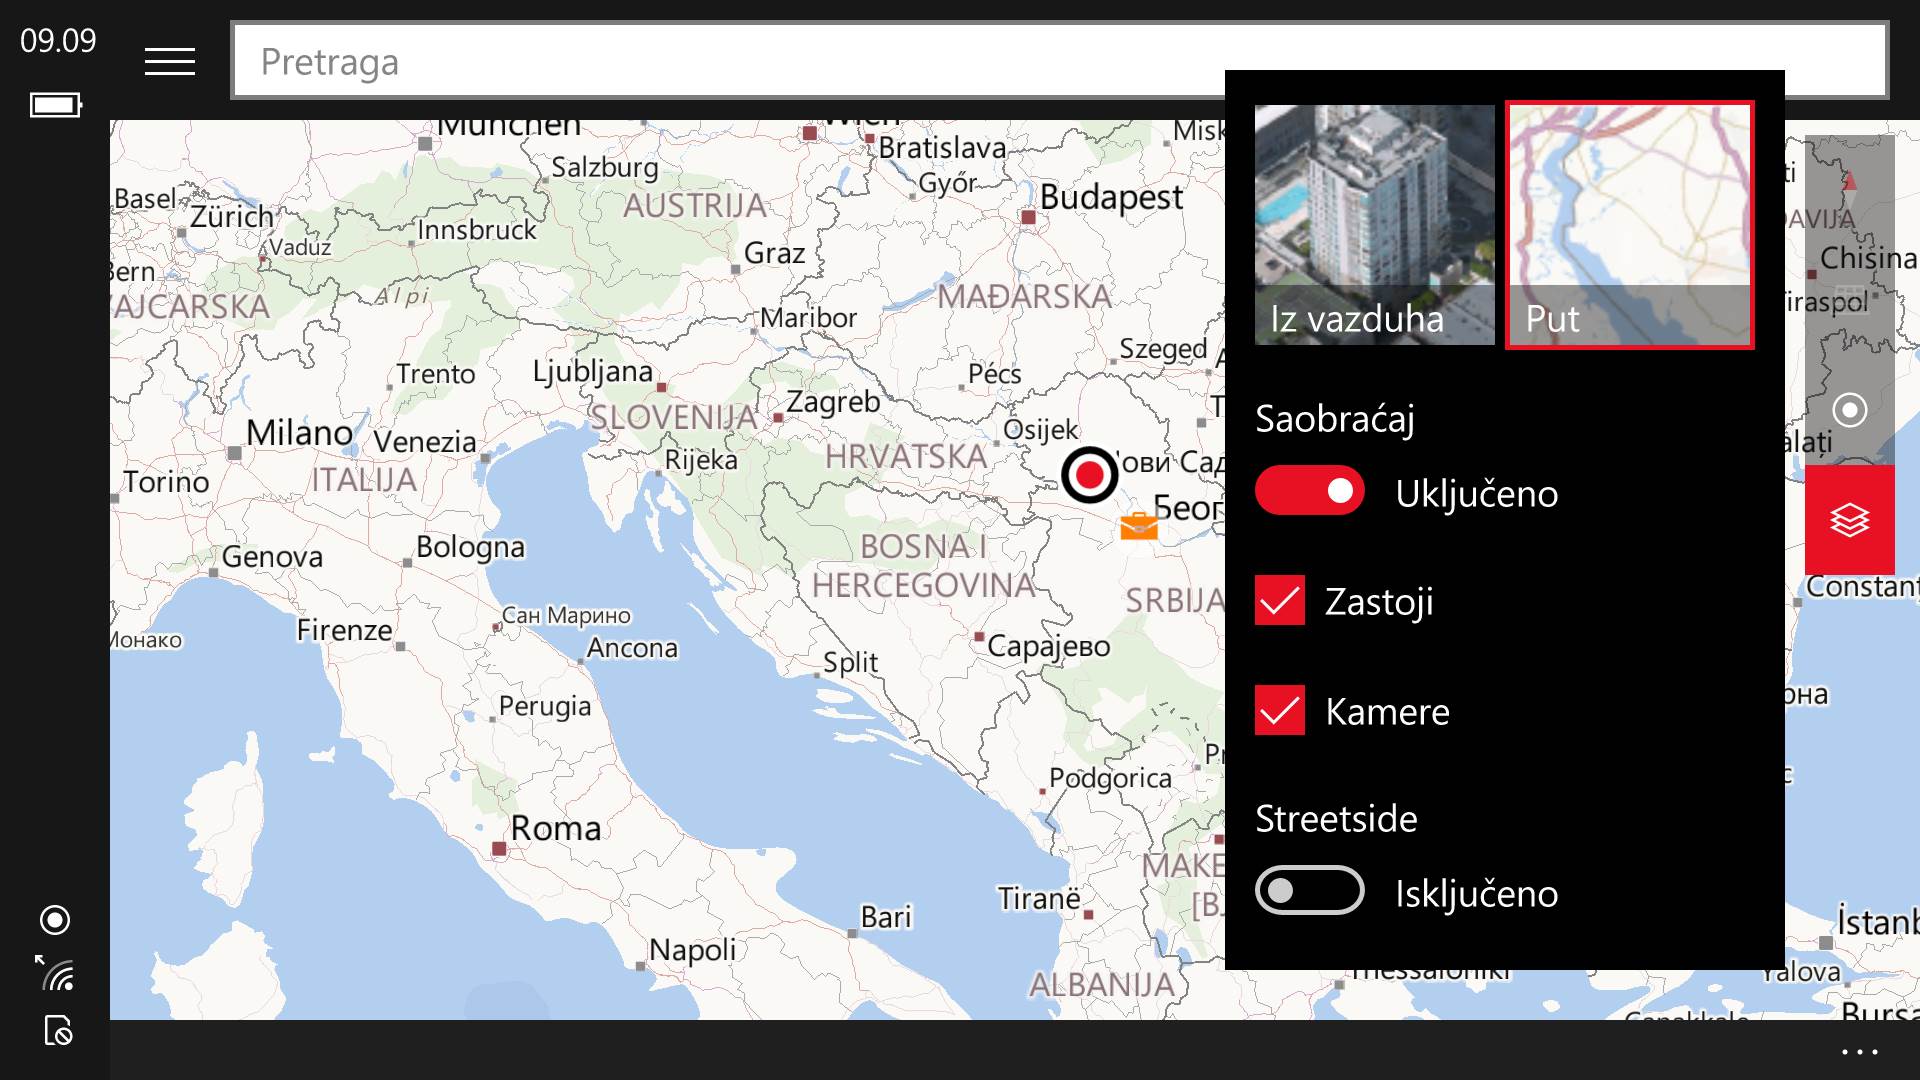 navigacija mapa srbije Here navigacija i mape na Windows i Microsoft uređajima | Mondo Portal navigacija mapa srbije